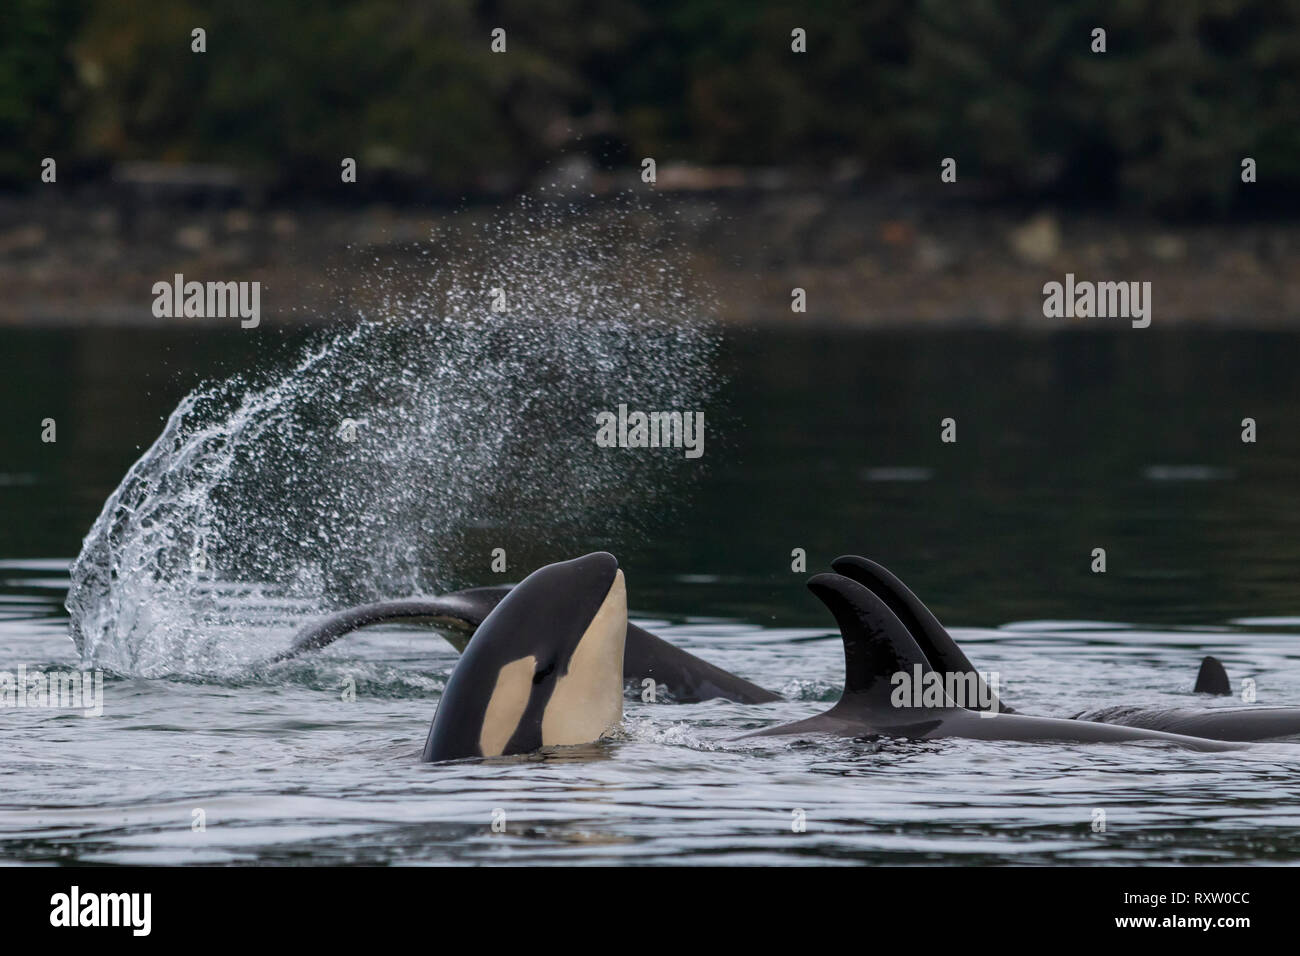 Grupo familiar de orcas residentes del norte (Orcinus orca) jugando cerca del archipiélago de Broughton, Territorio de las primeras Naciones, frente a la isla de Vancouver, Columbia Británica, Canadá Foto de stock